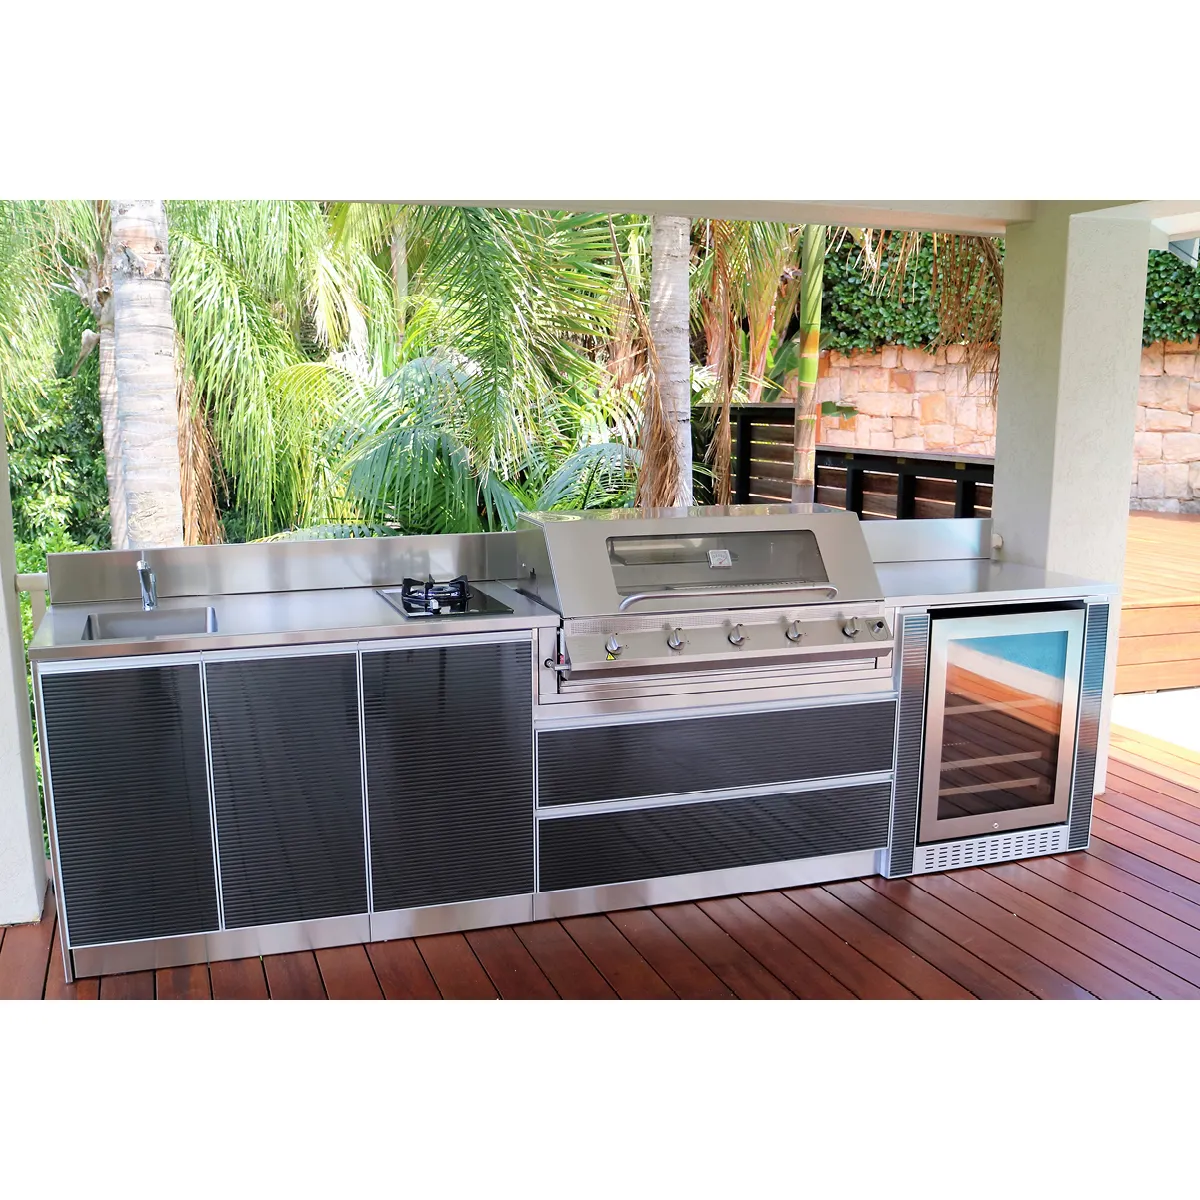 Barbecue Island Grill de cuisine extérieure avec réfrigérateur pour maison et jardin en acier inoxydable 304